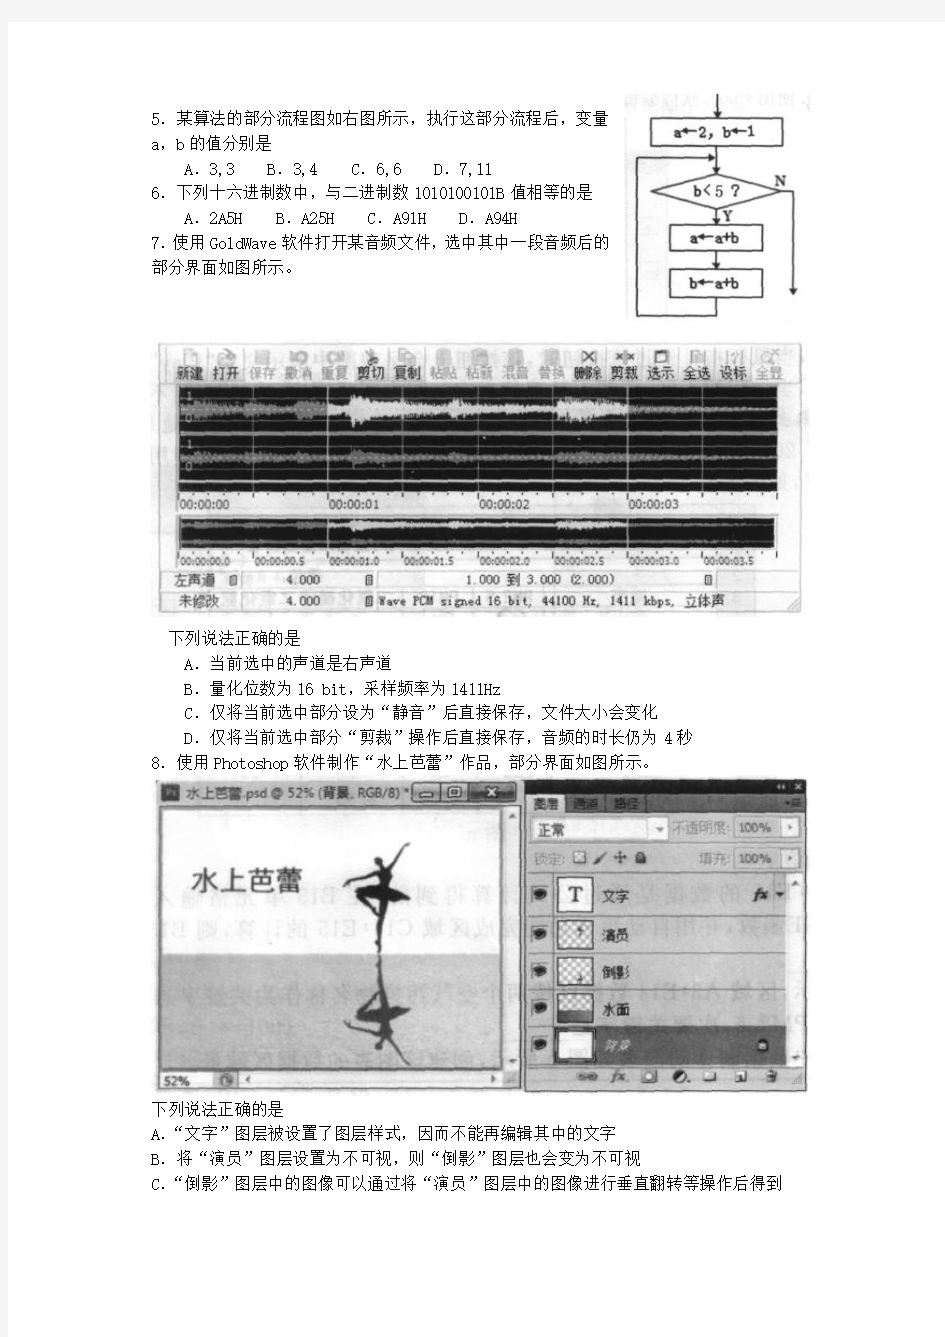 2016年10月浙江省普通高中学业水平考试技术试题(学考)